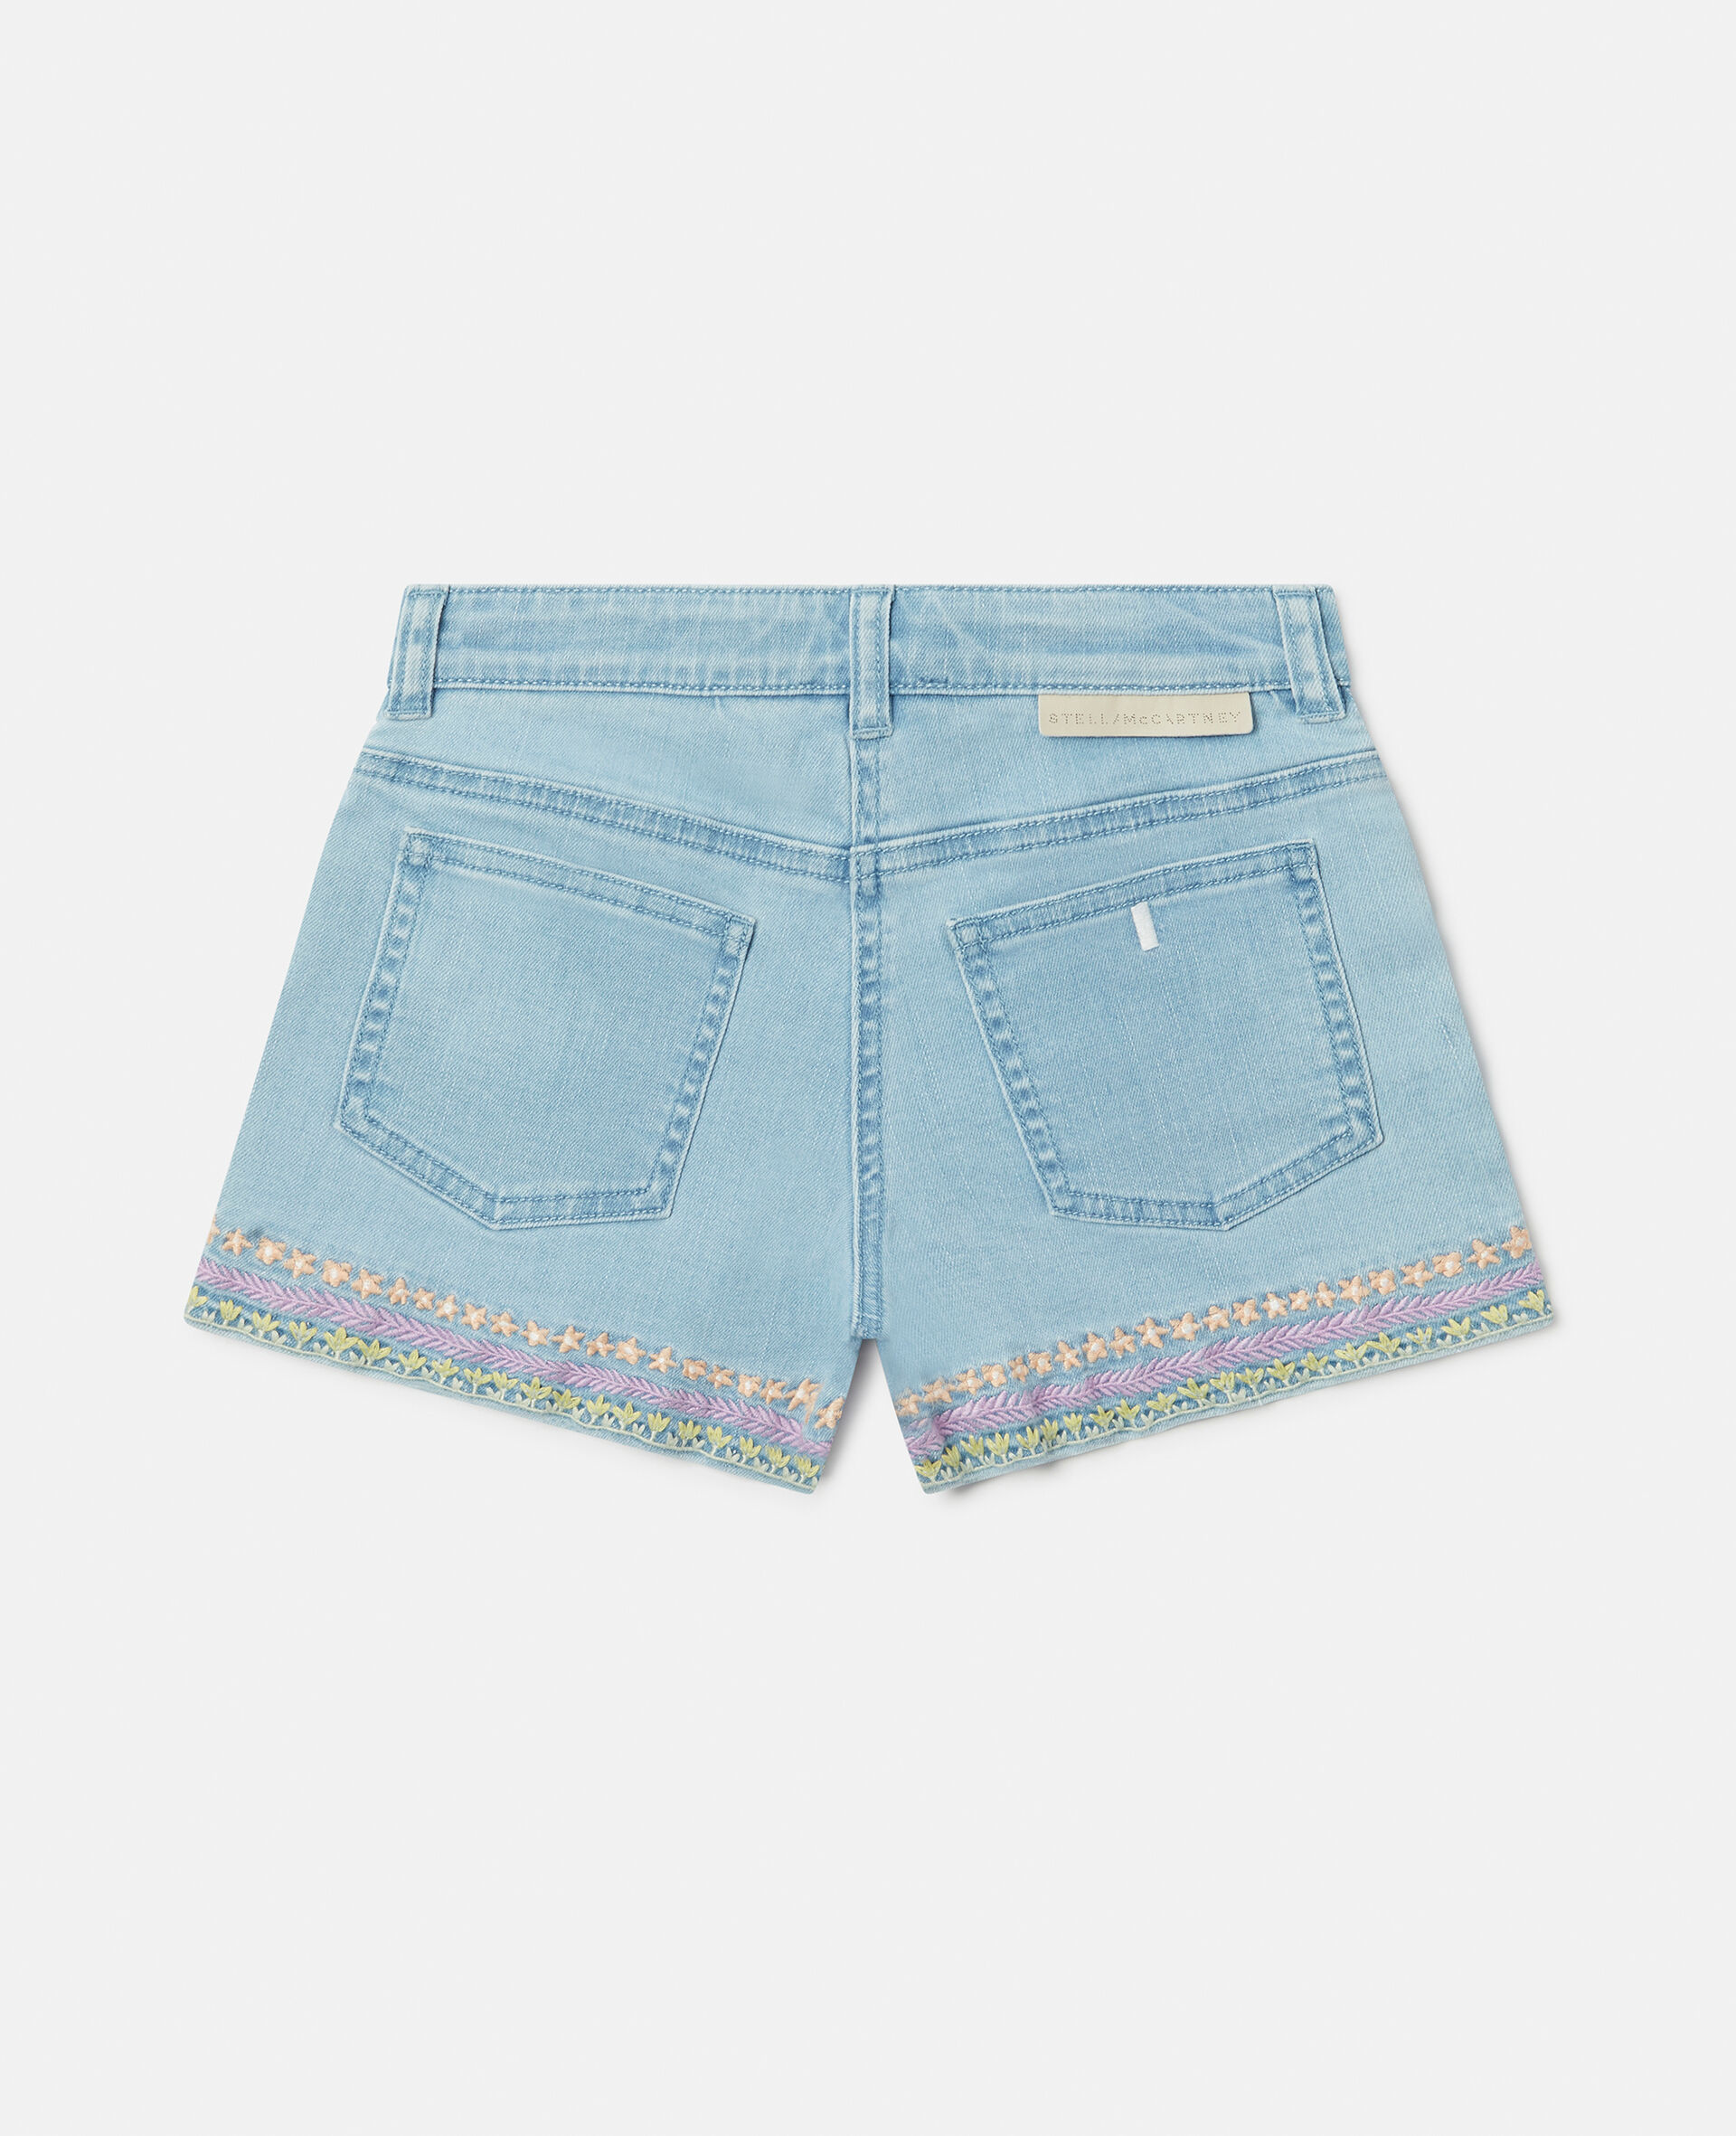 Flower Line Embroidery Denim Shorts-Blue-large image number 2